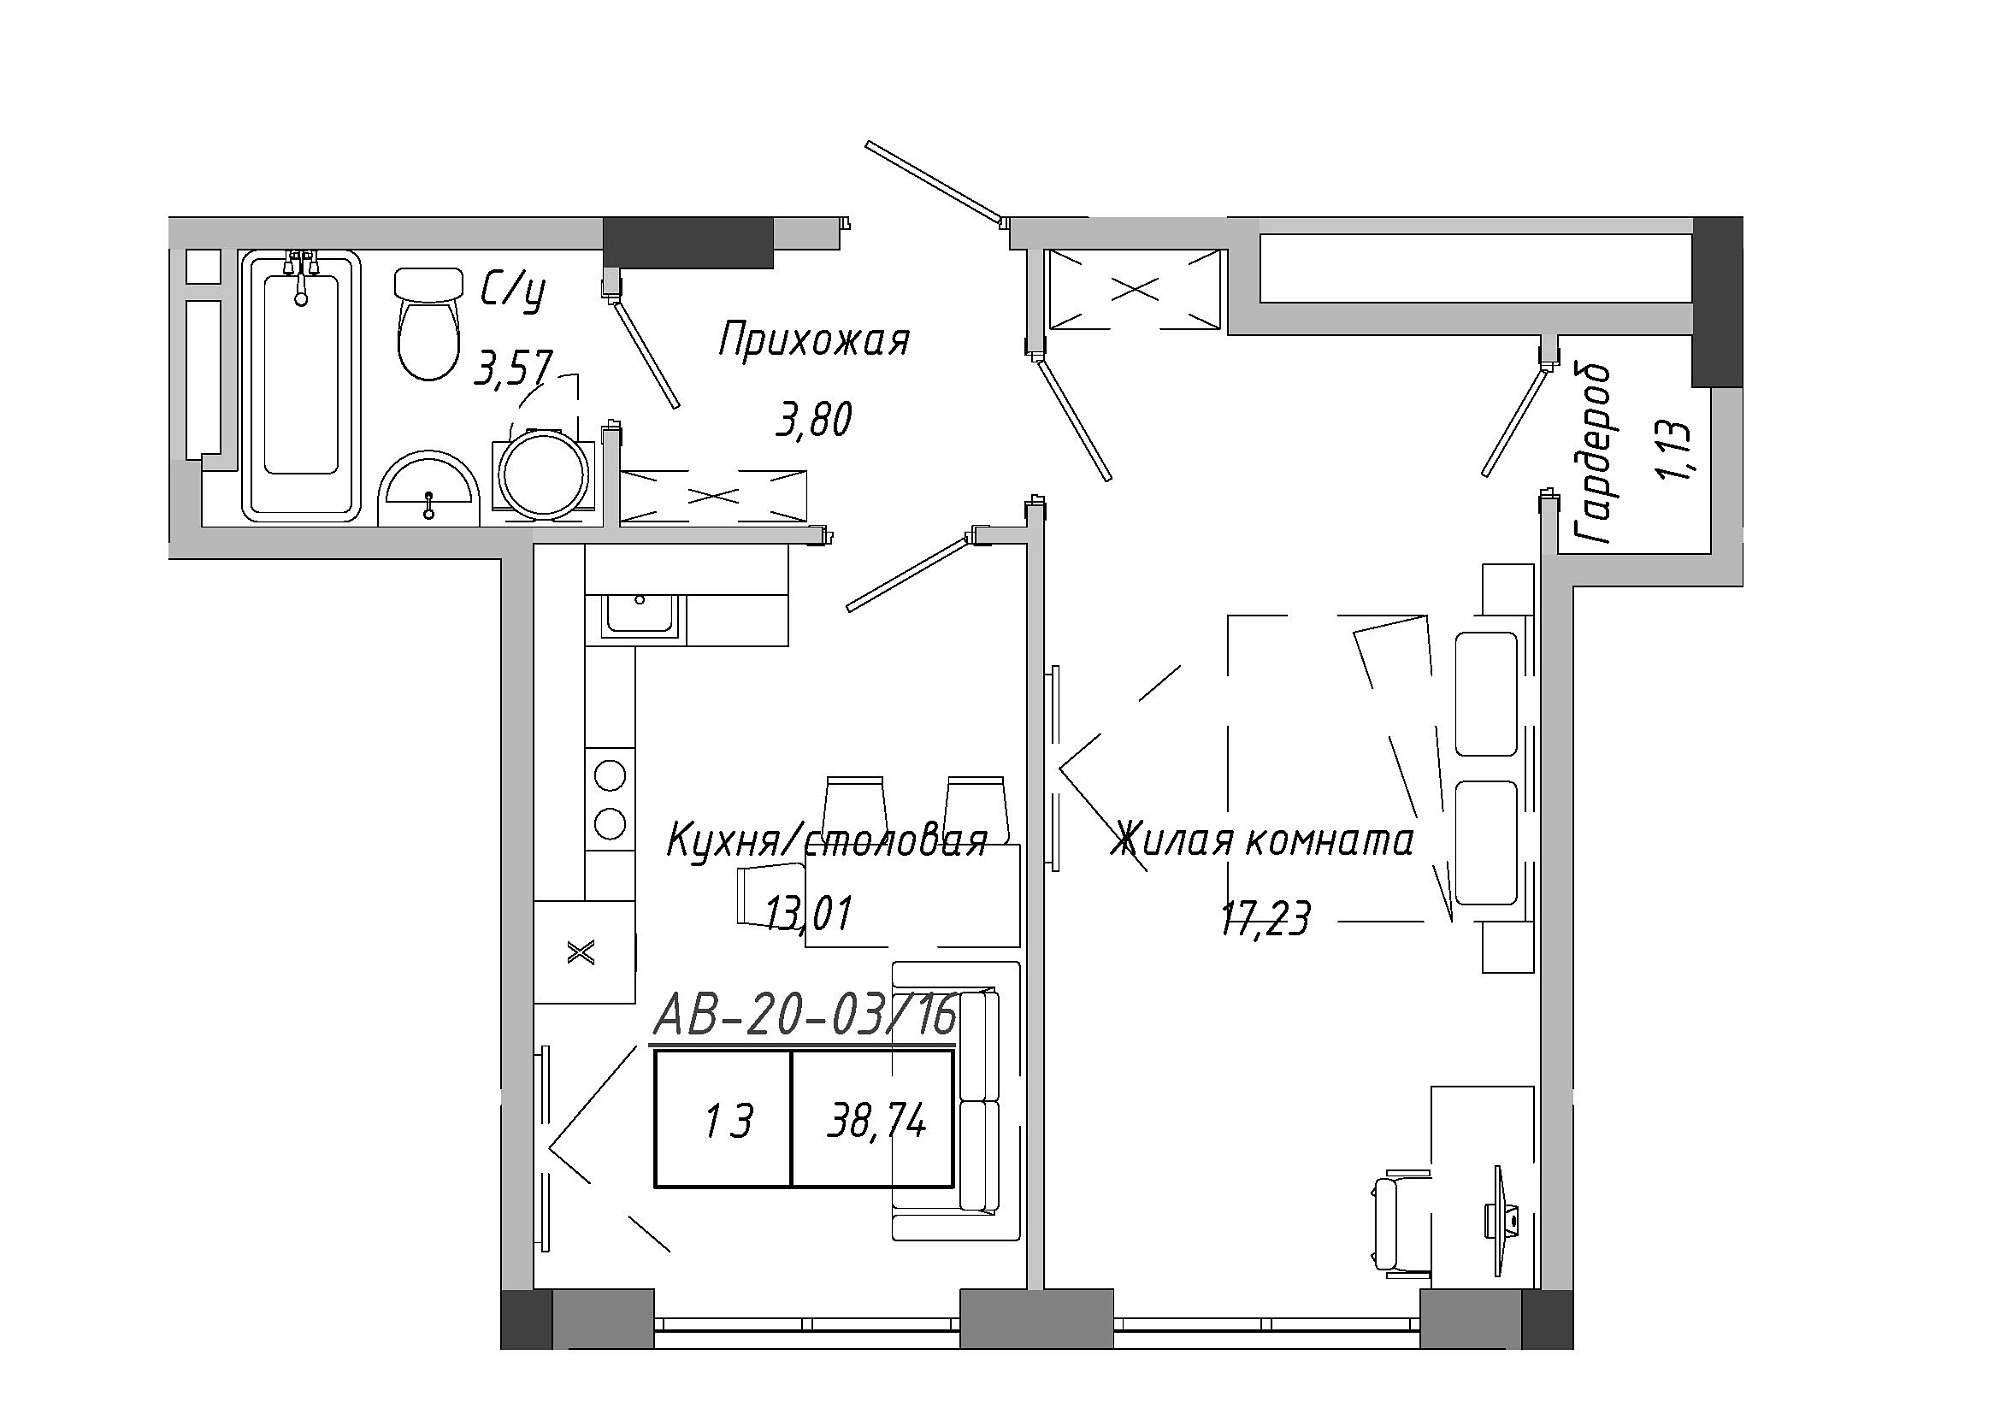 Планировка 1-к квартира площей 38.74м2, AB-20-03/00016.